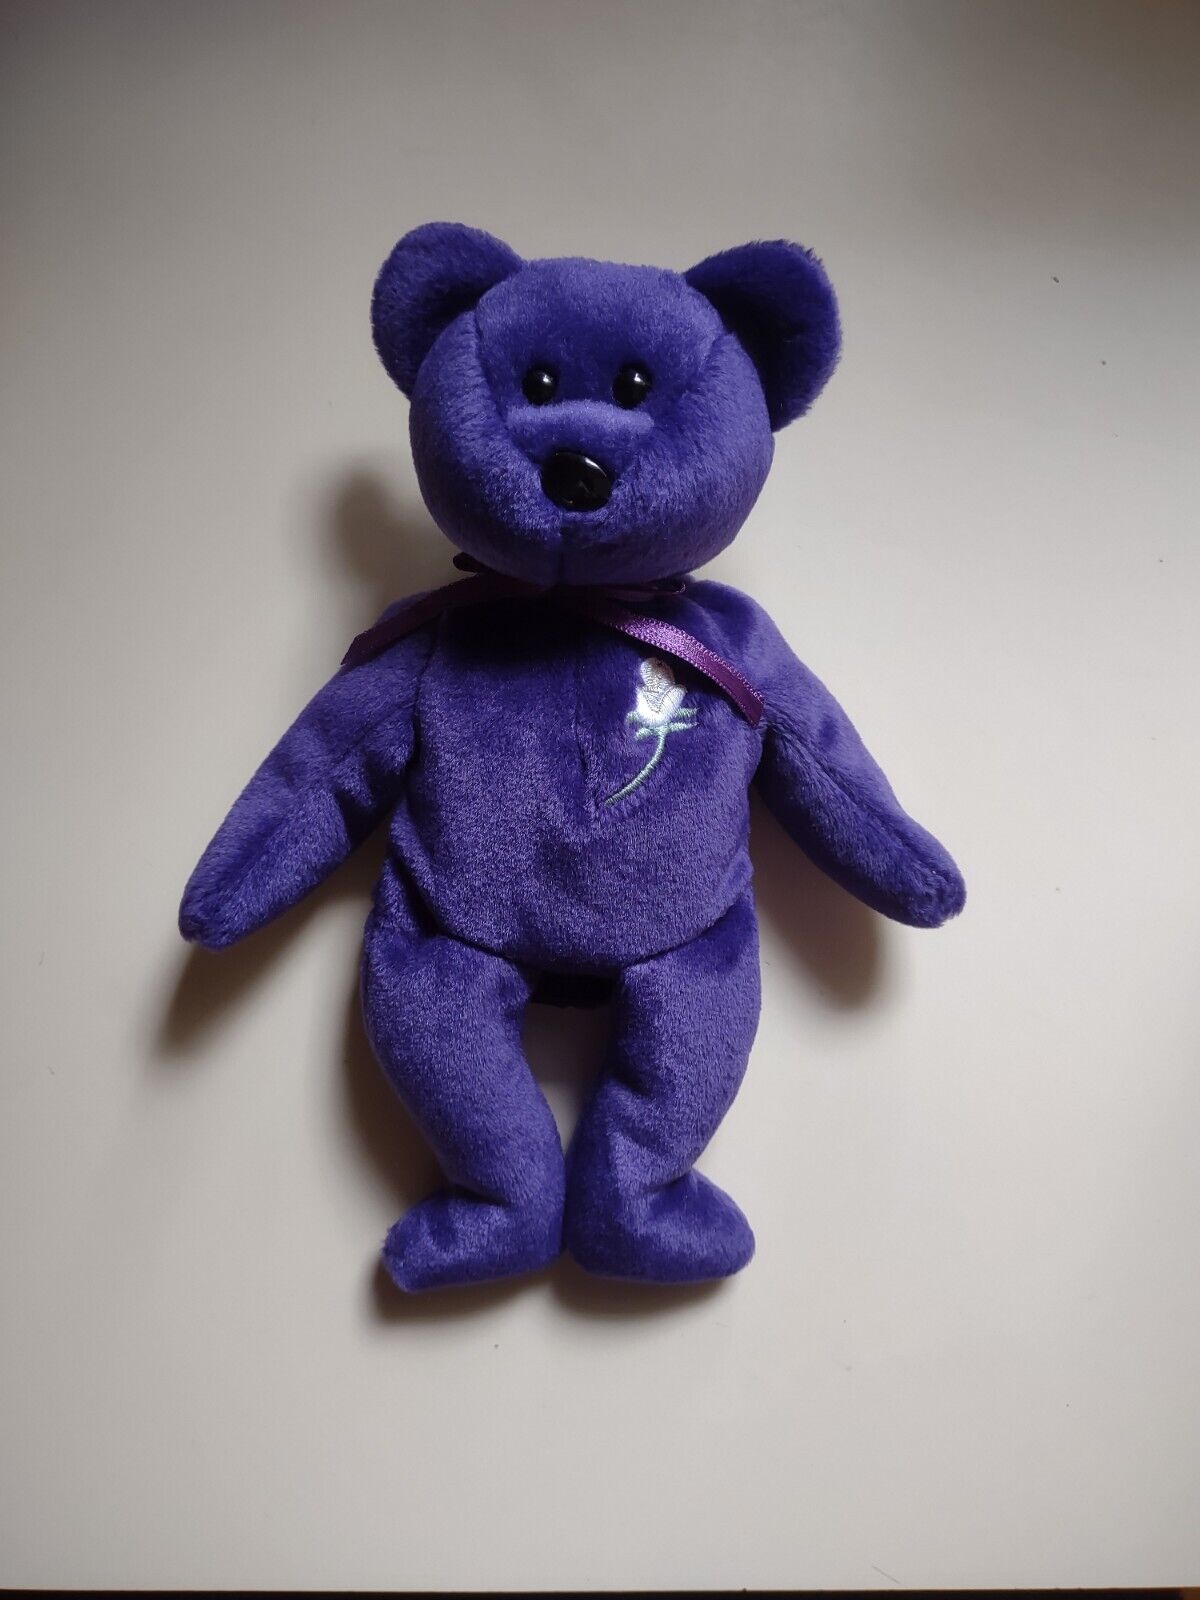 Royal Princess Diana ty Beanie Baby Bear 1997 Handmade In China P.E. Pellets